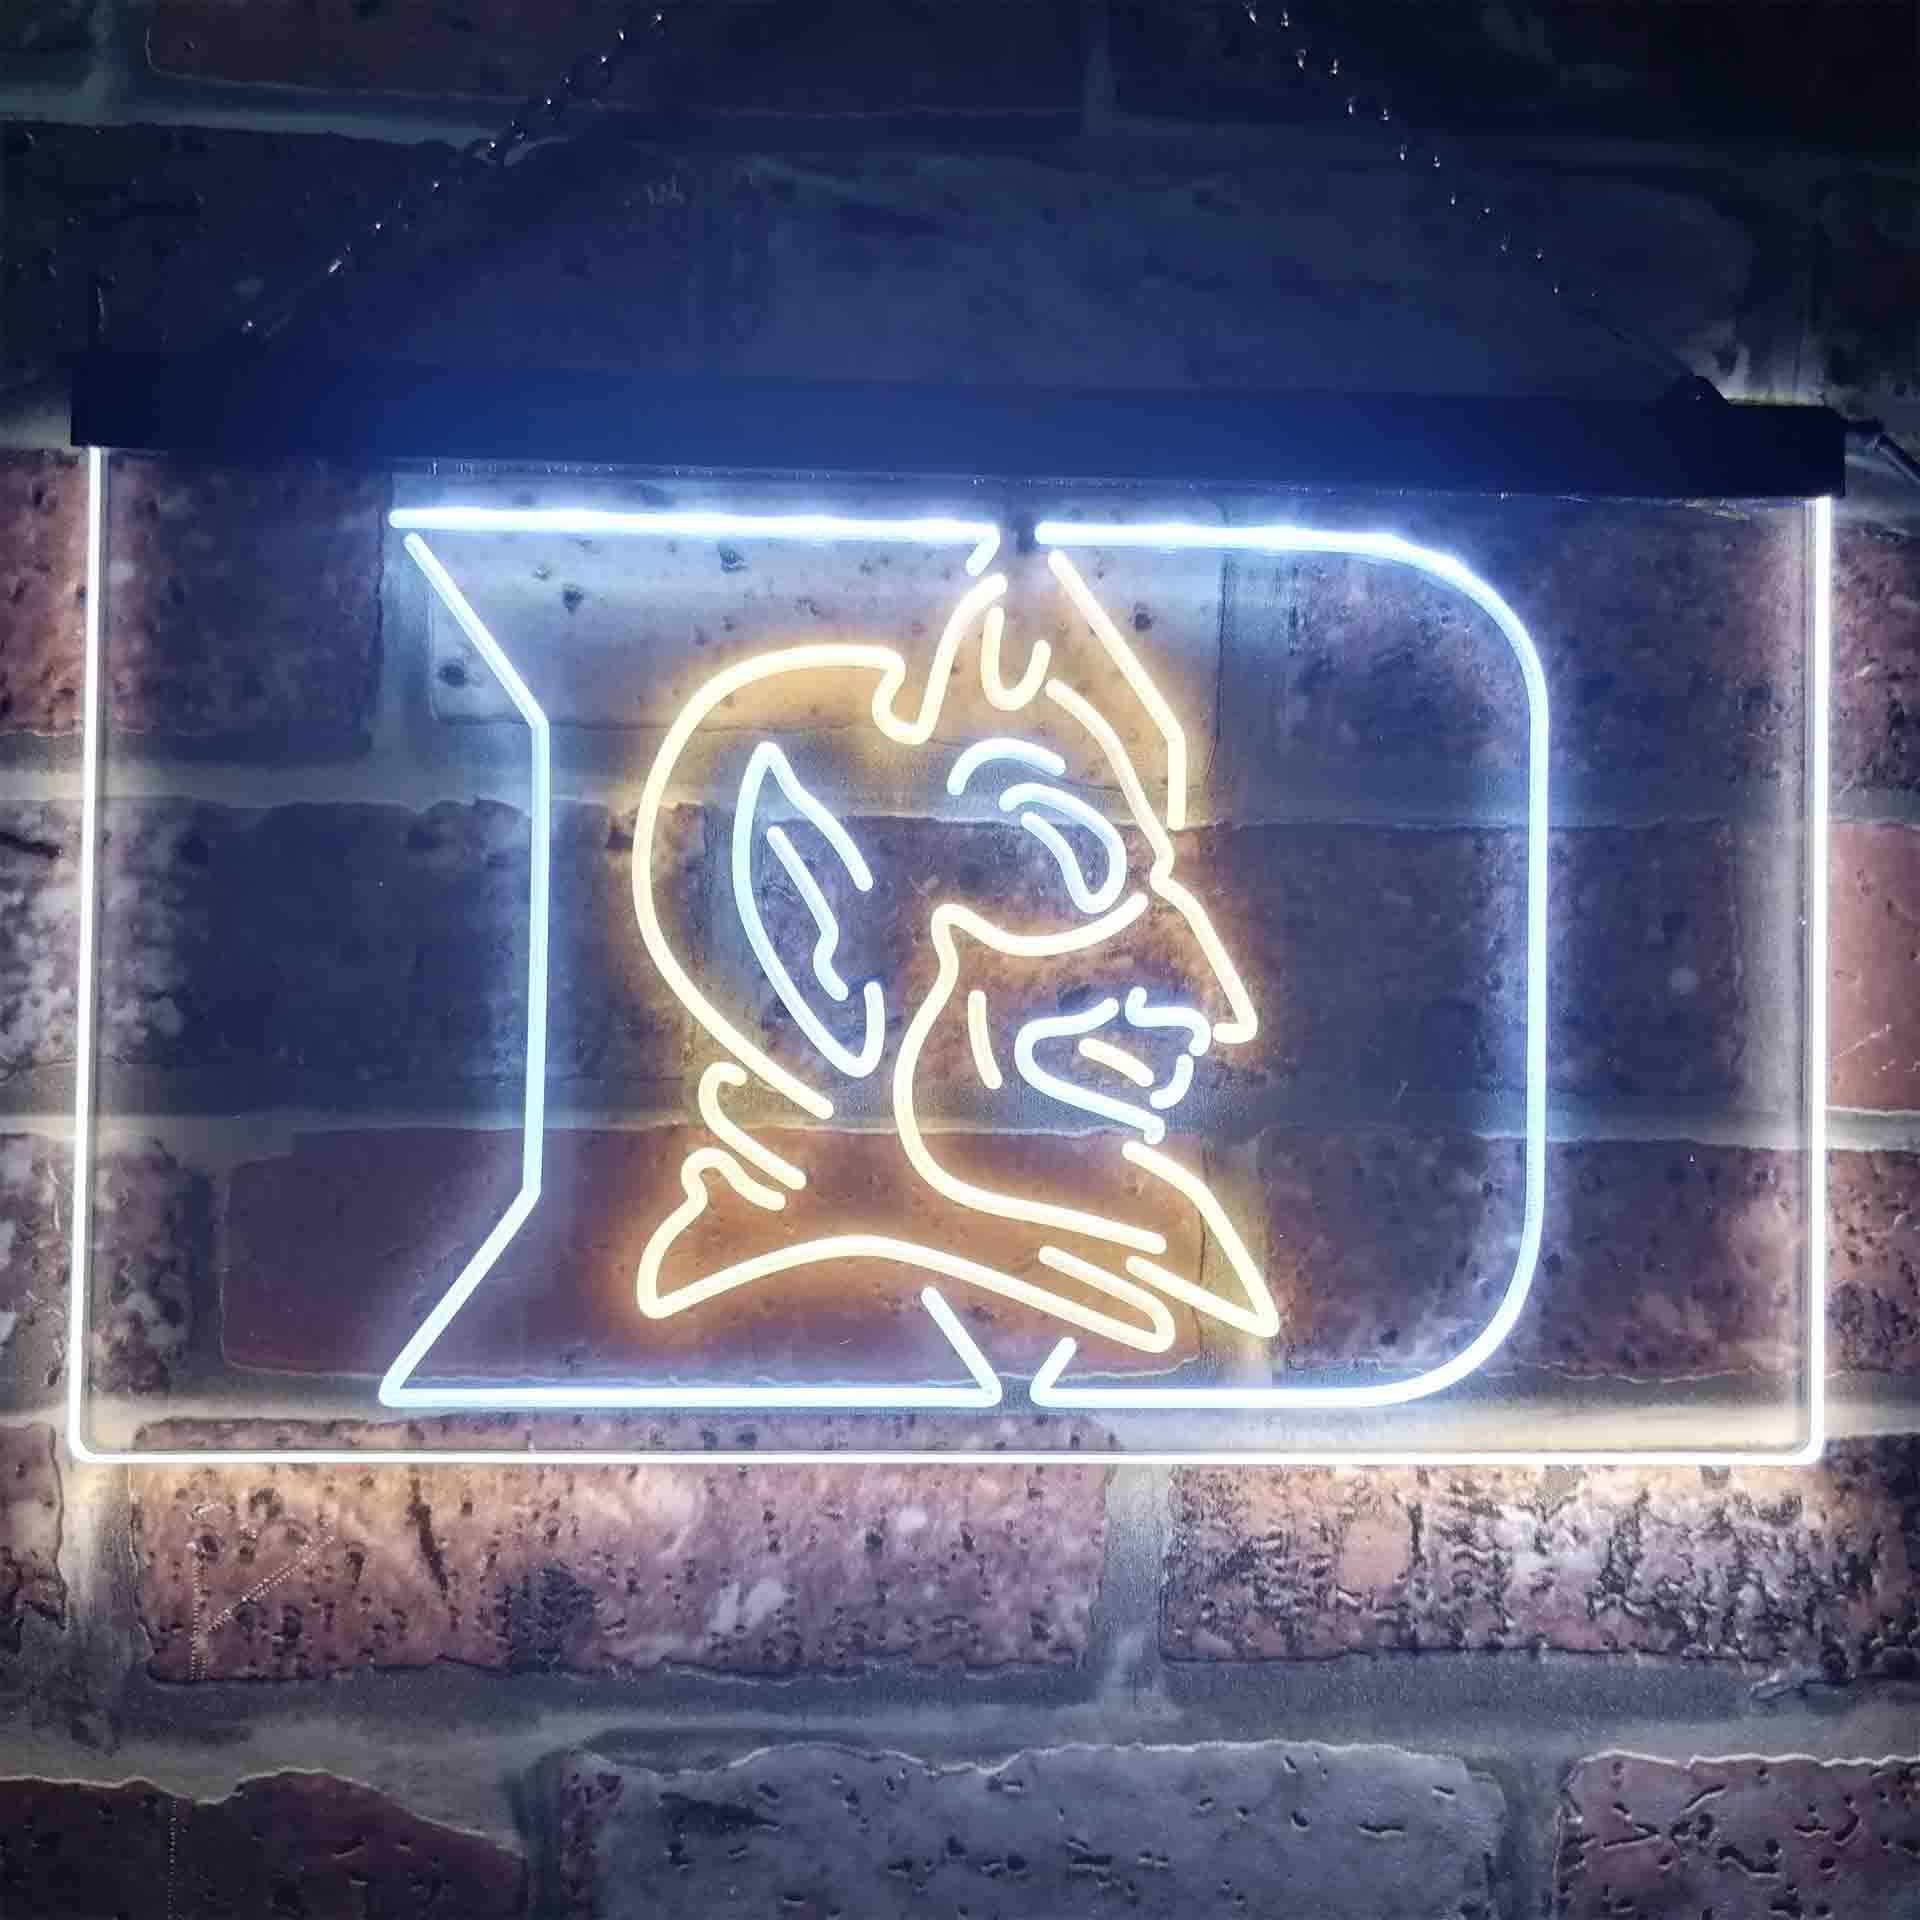 Duke Sport Team Basketball LED Neon Sign